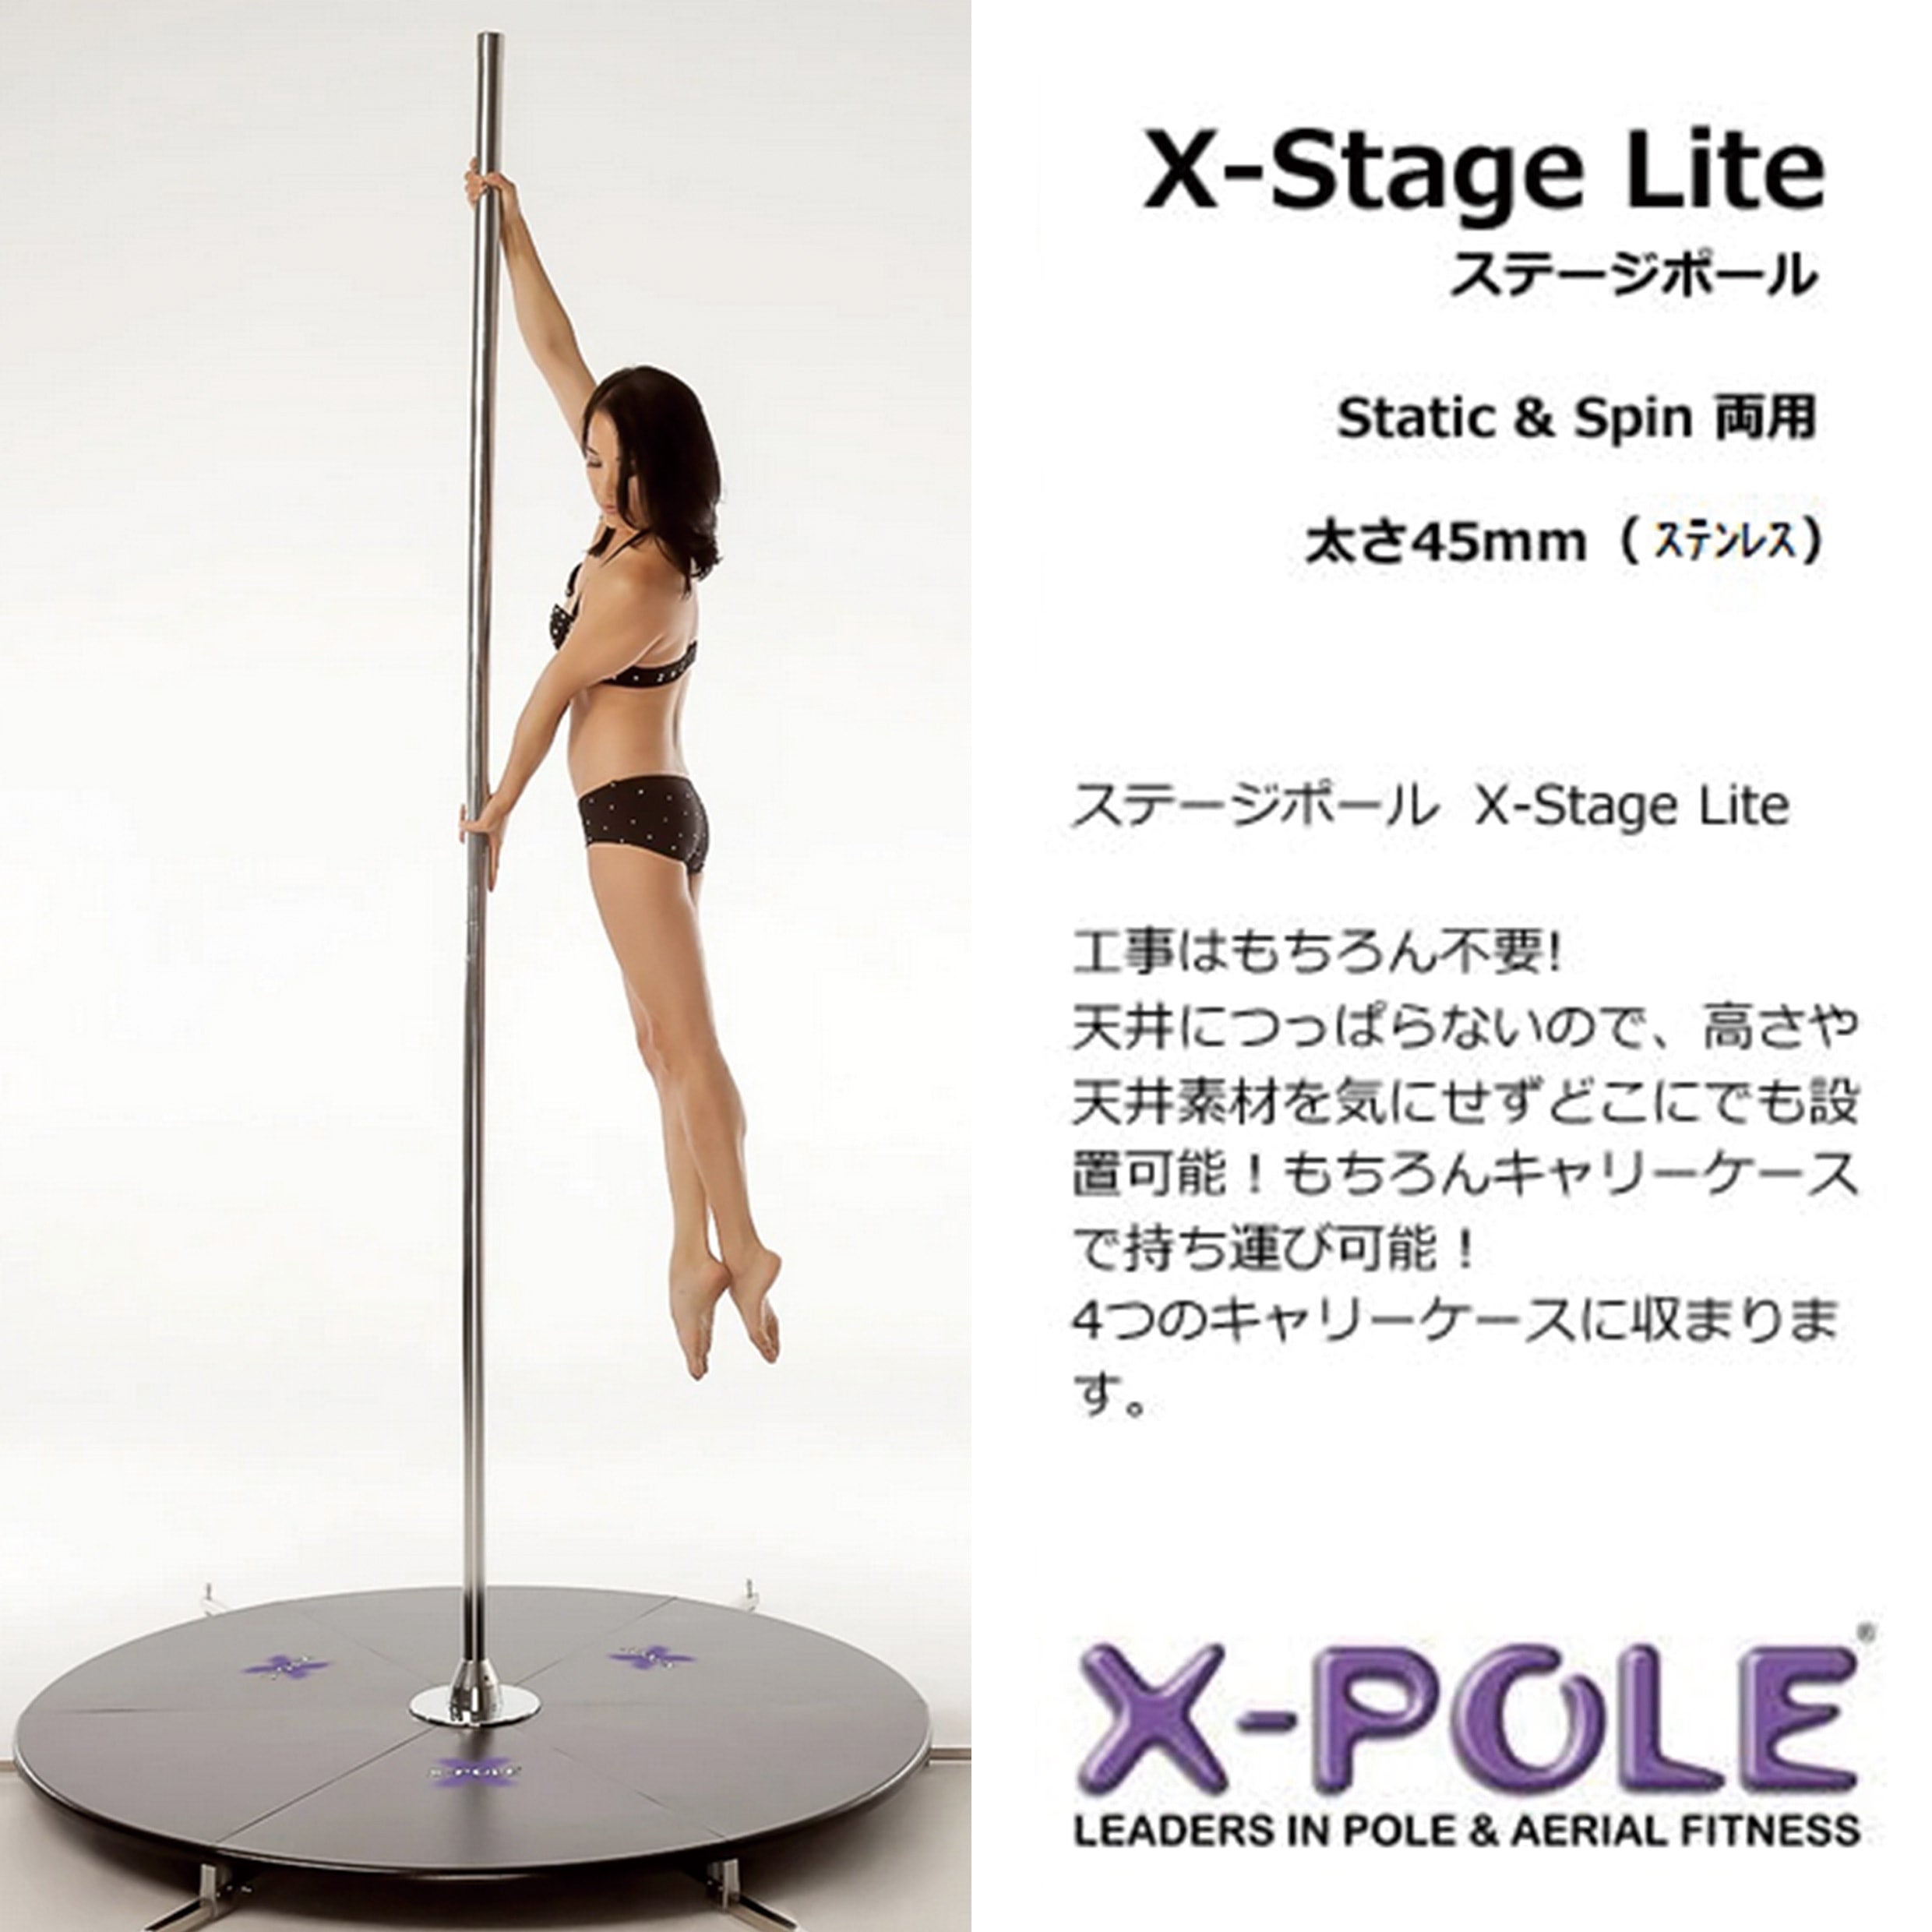 X-STAGE LITEは携帯型のポールダンス用ポールステージです。